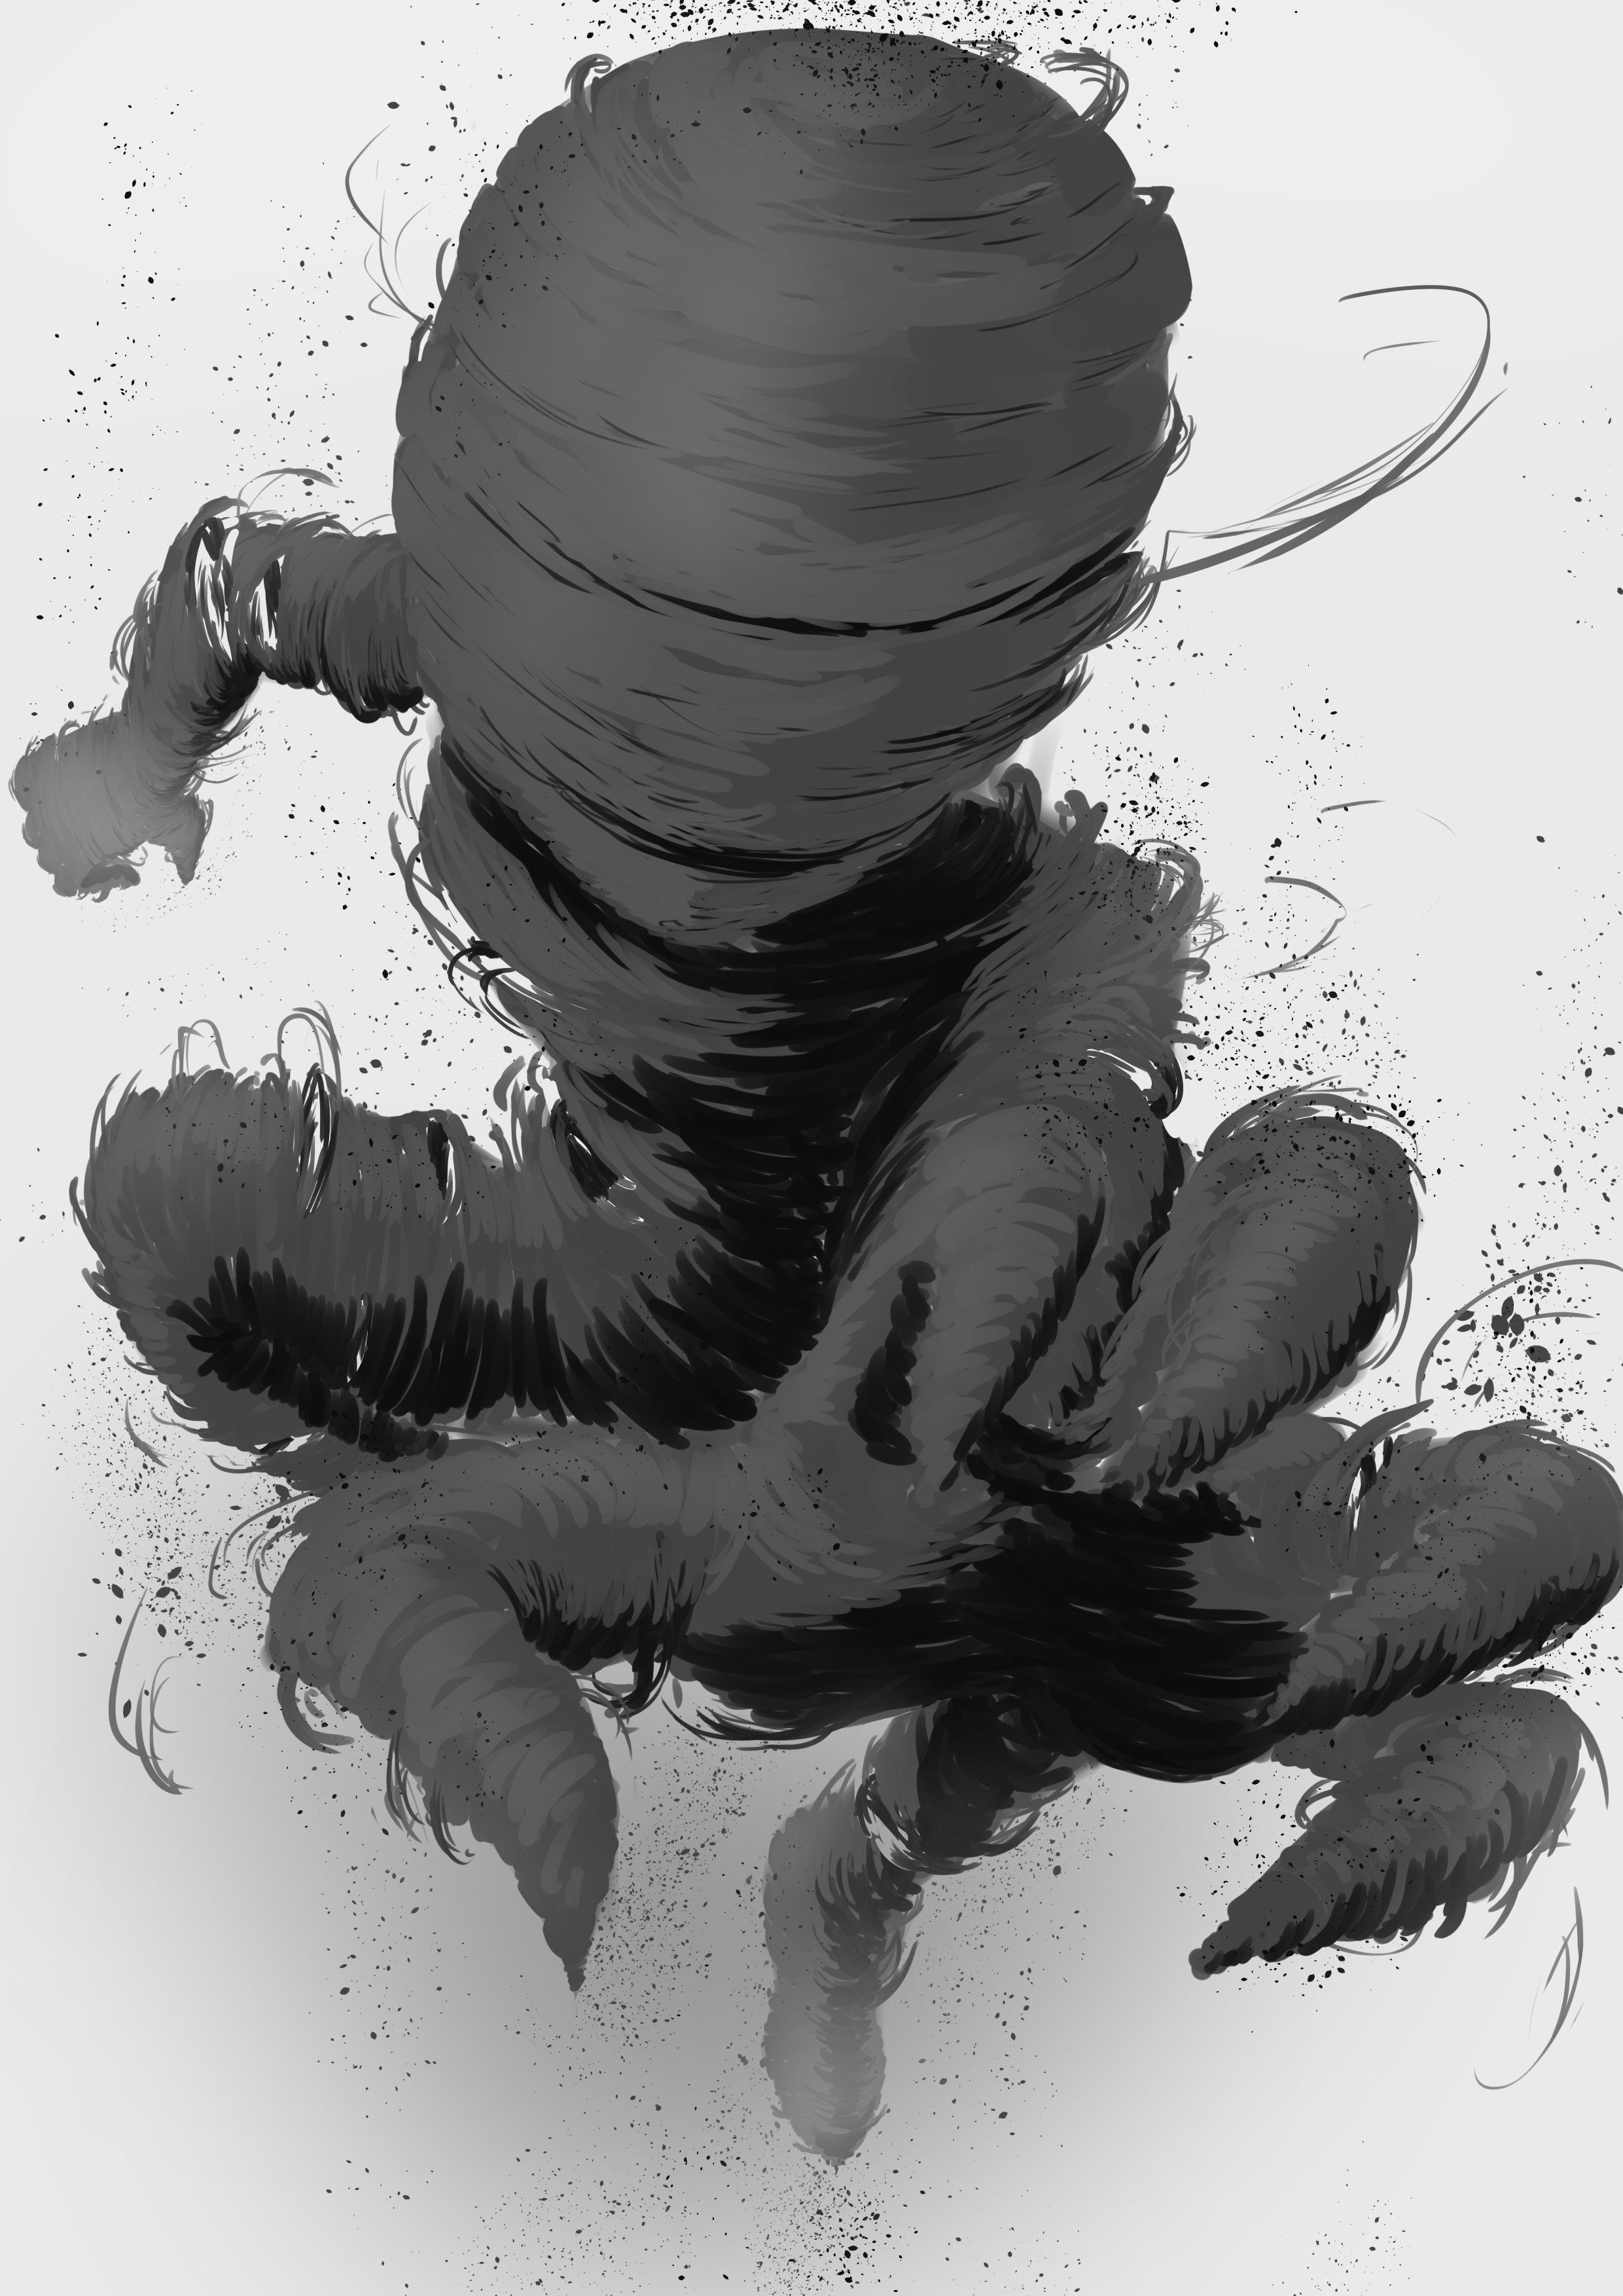 しば 亜人の黒い幽霊描いた 亜人 黒い幽霊 T Co Y02qqddxl7 Twitter